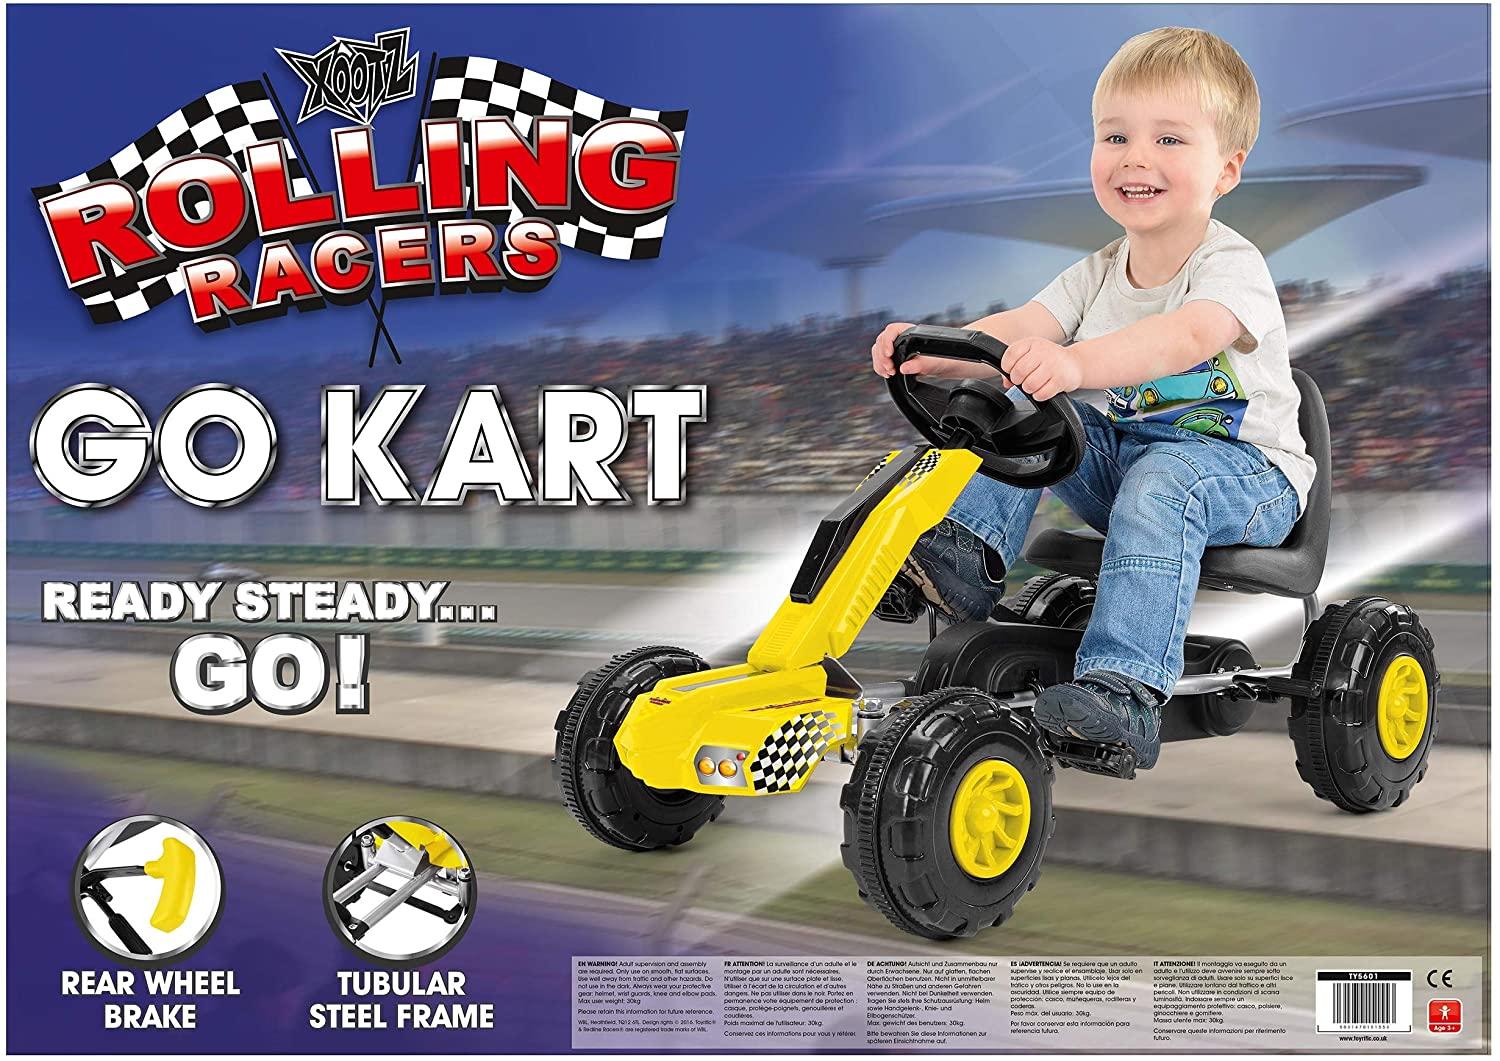 Redline Racers Go Kart Toymaster Ballina